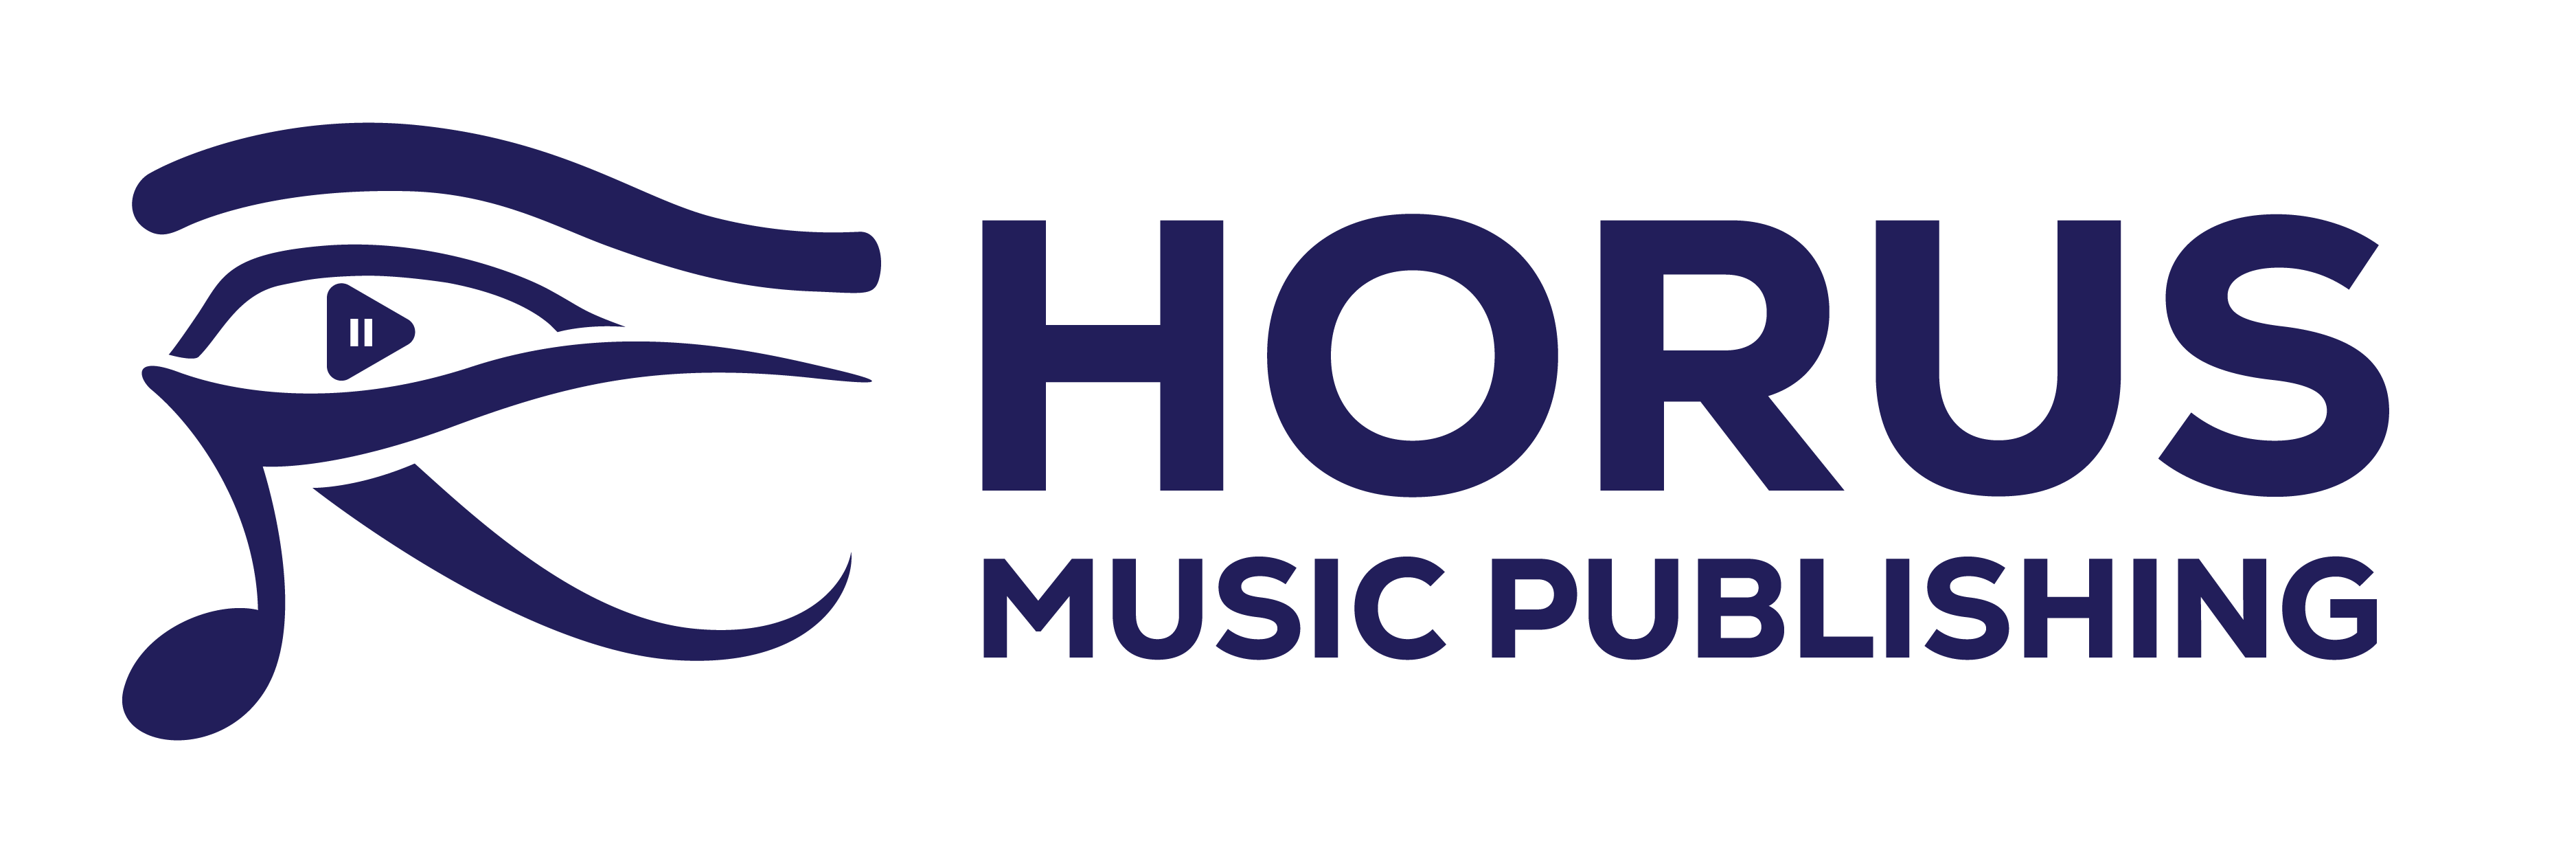 Horus Music Publishing Logo_B_Blue logo on white background